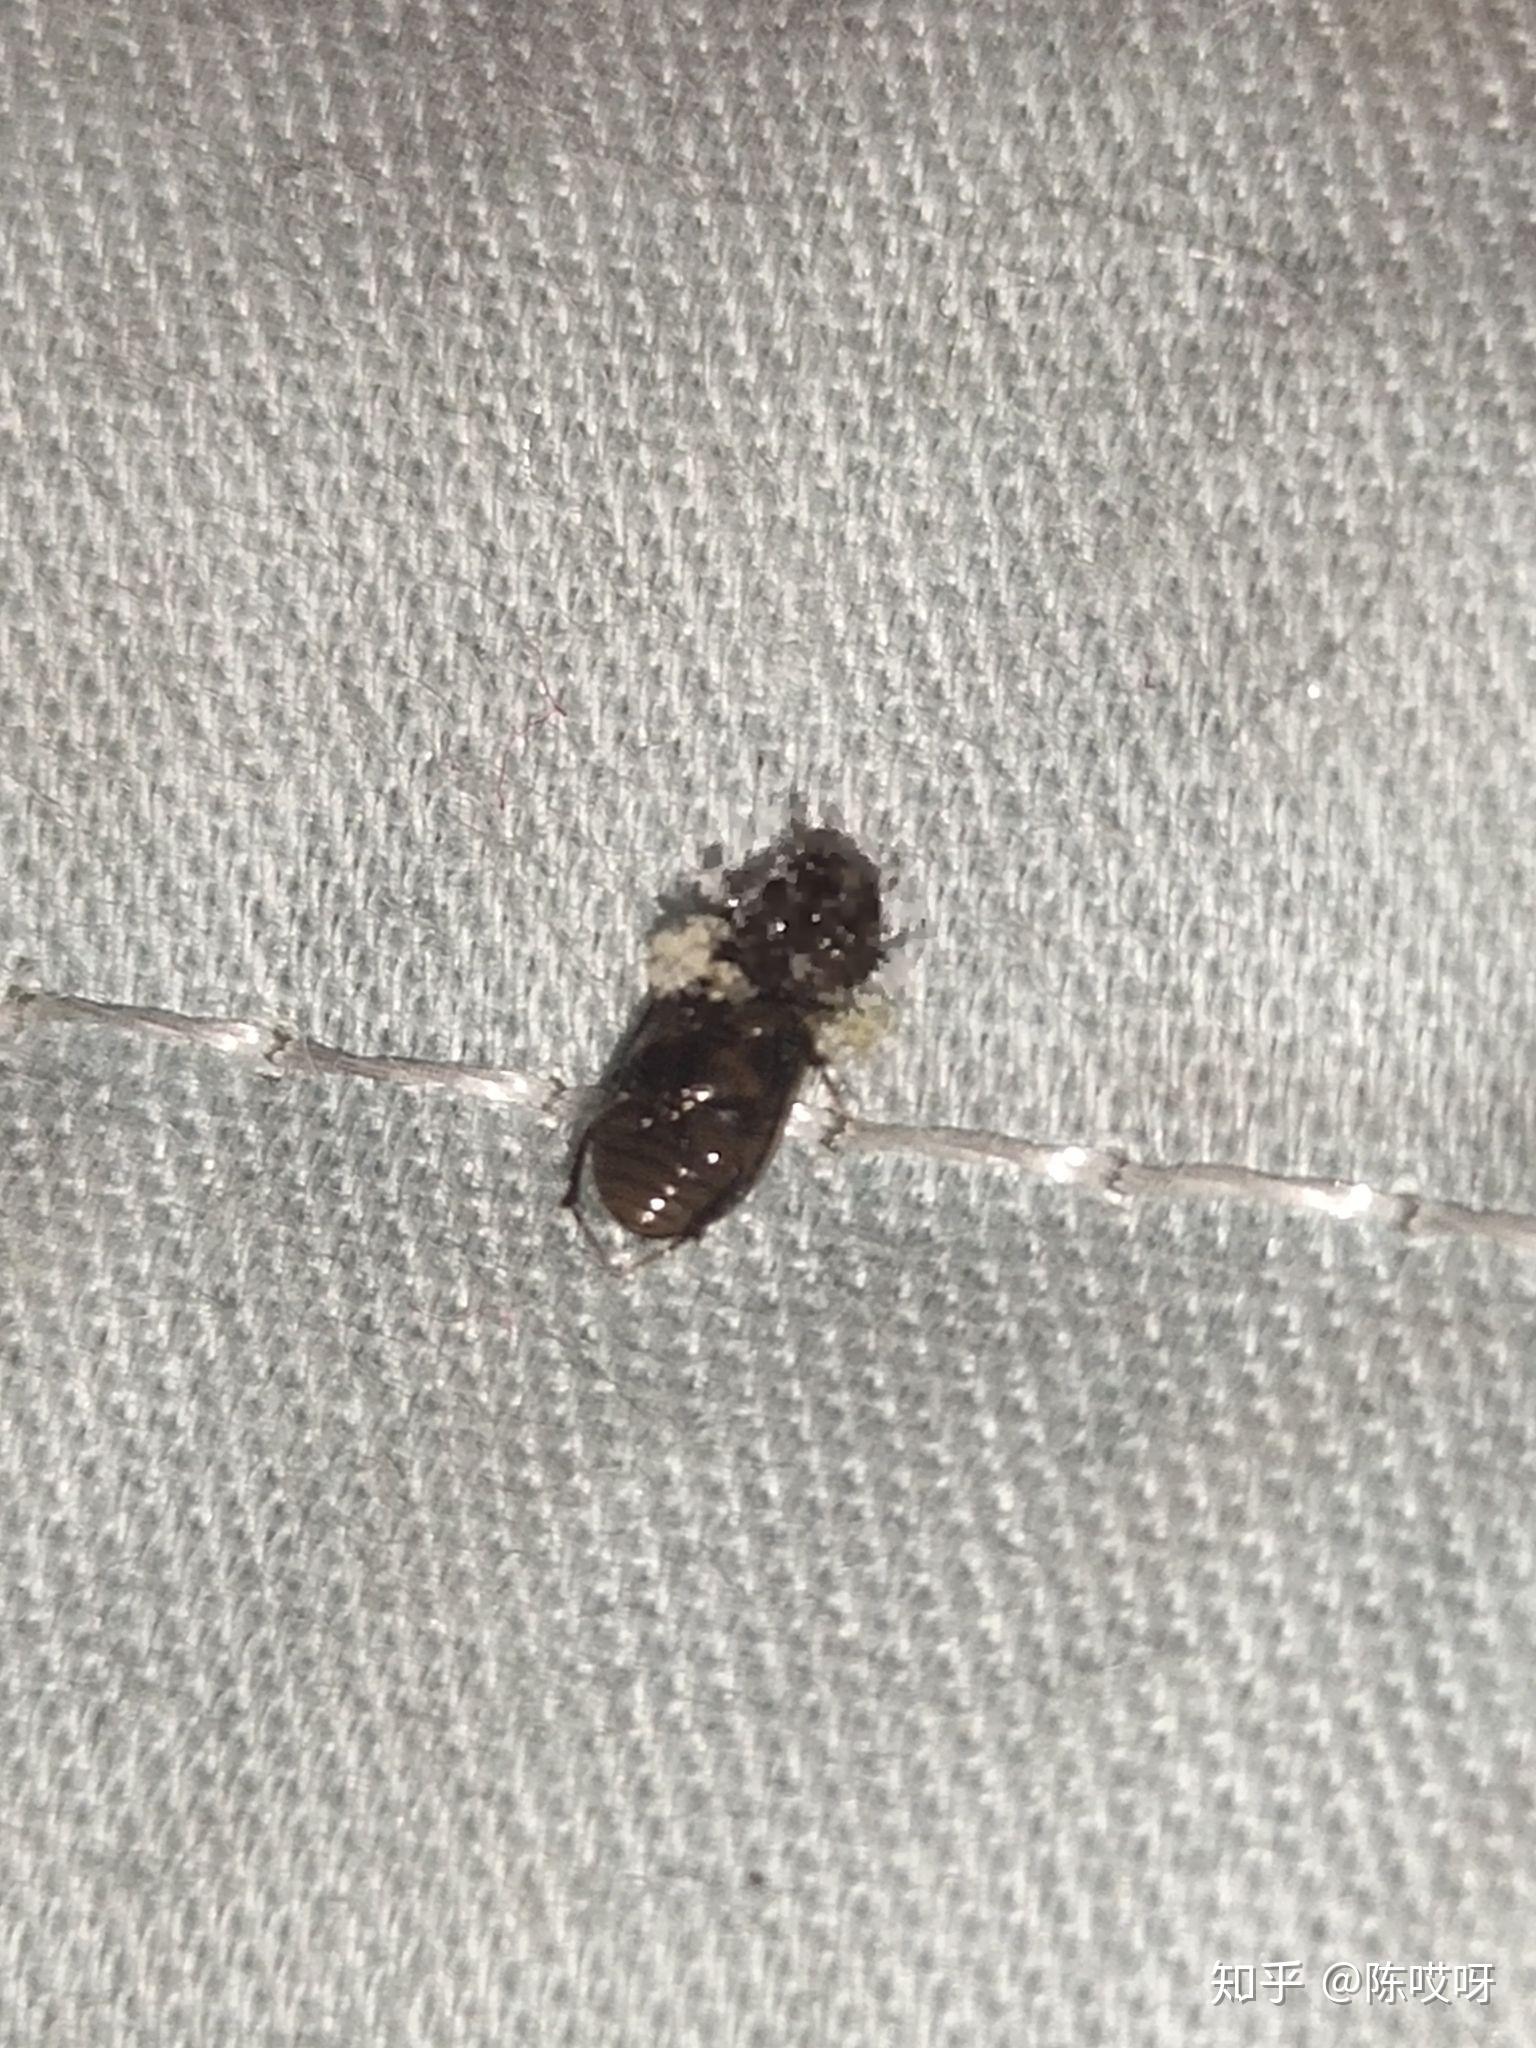 卧室出现好多小黑虫求问这是什么虫子蚊香熏不死